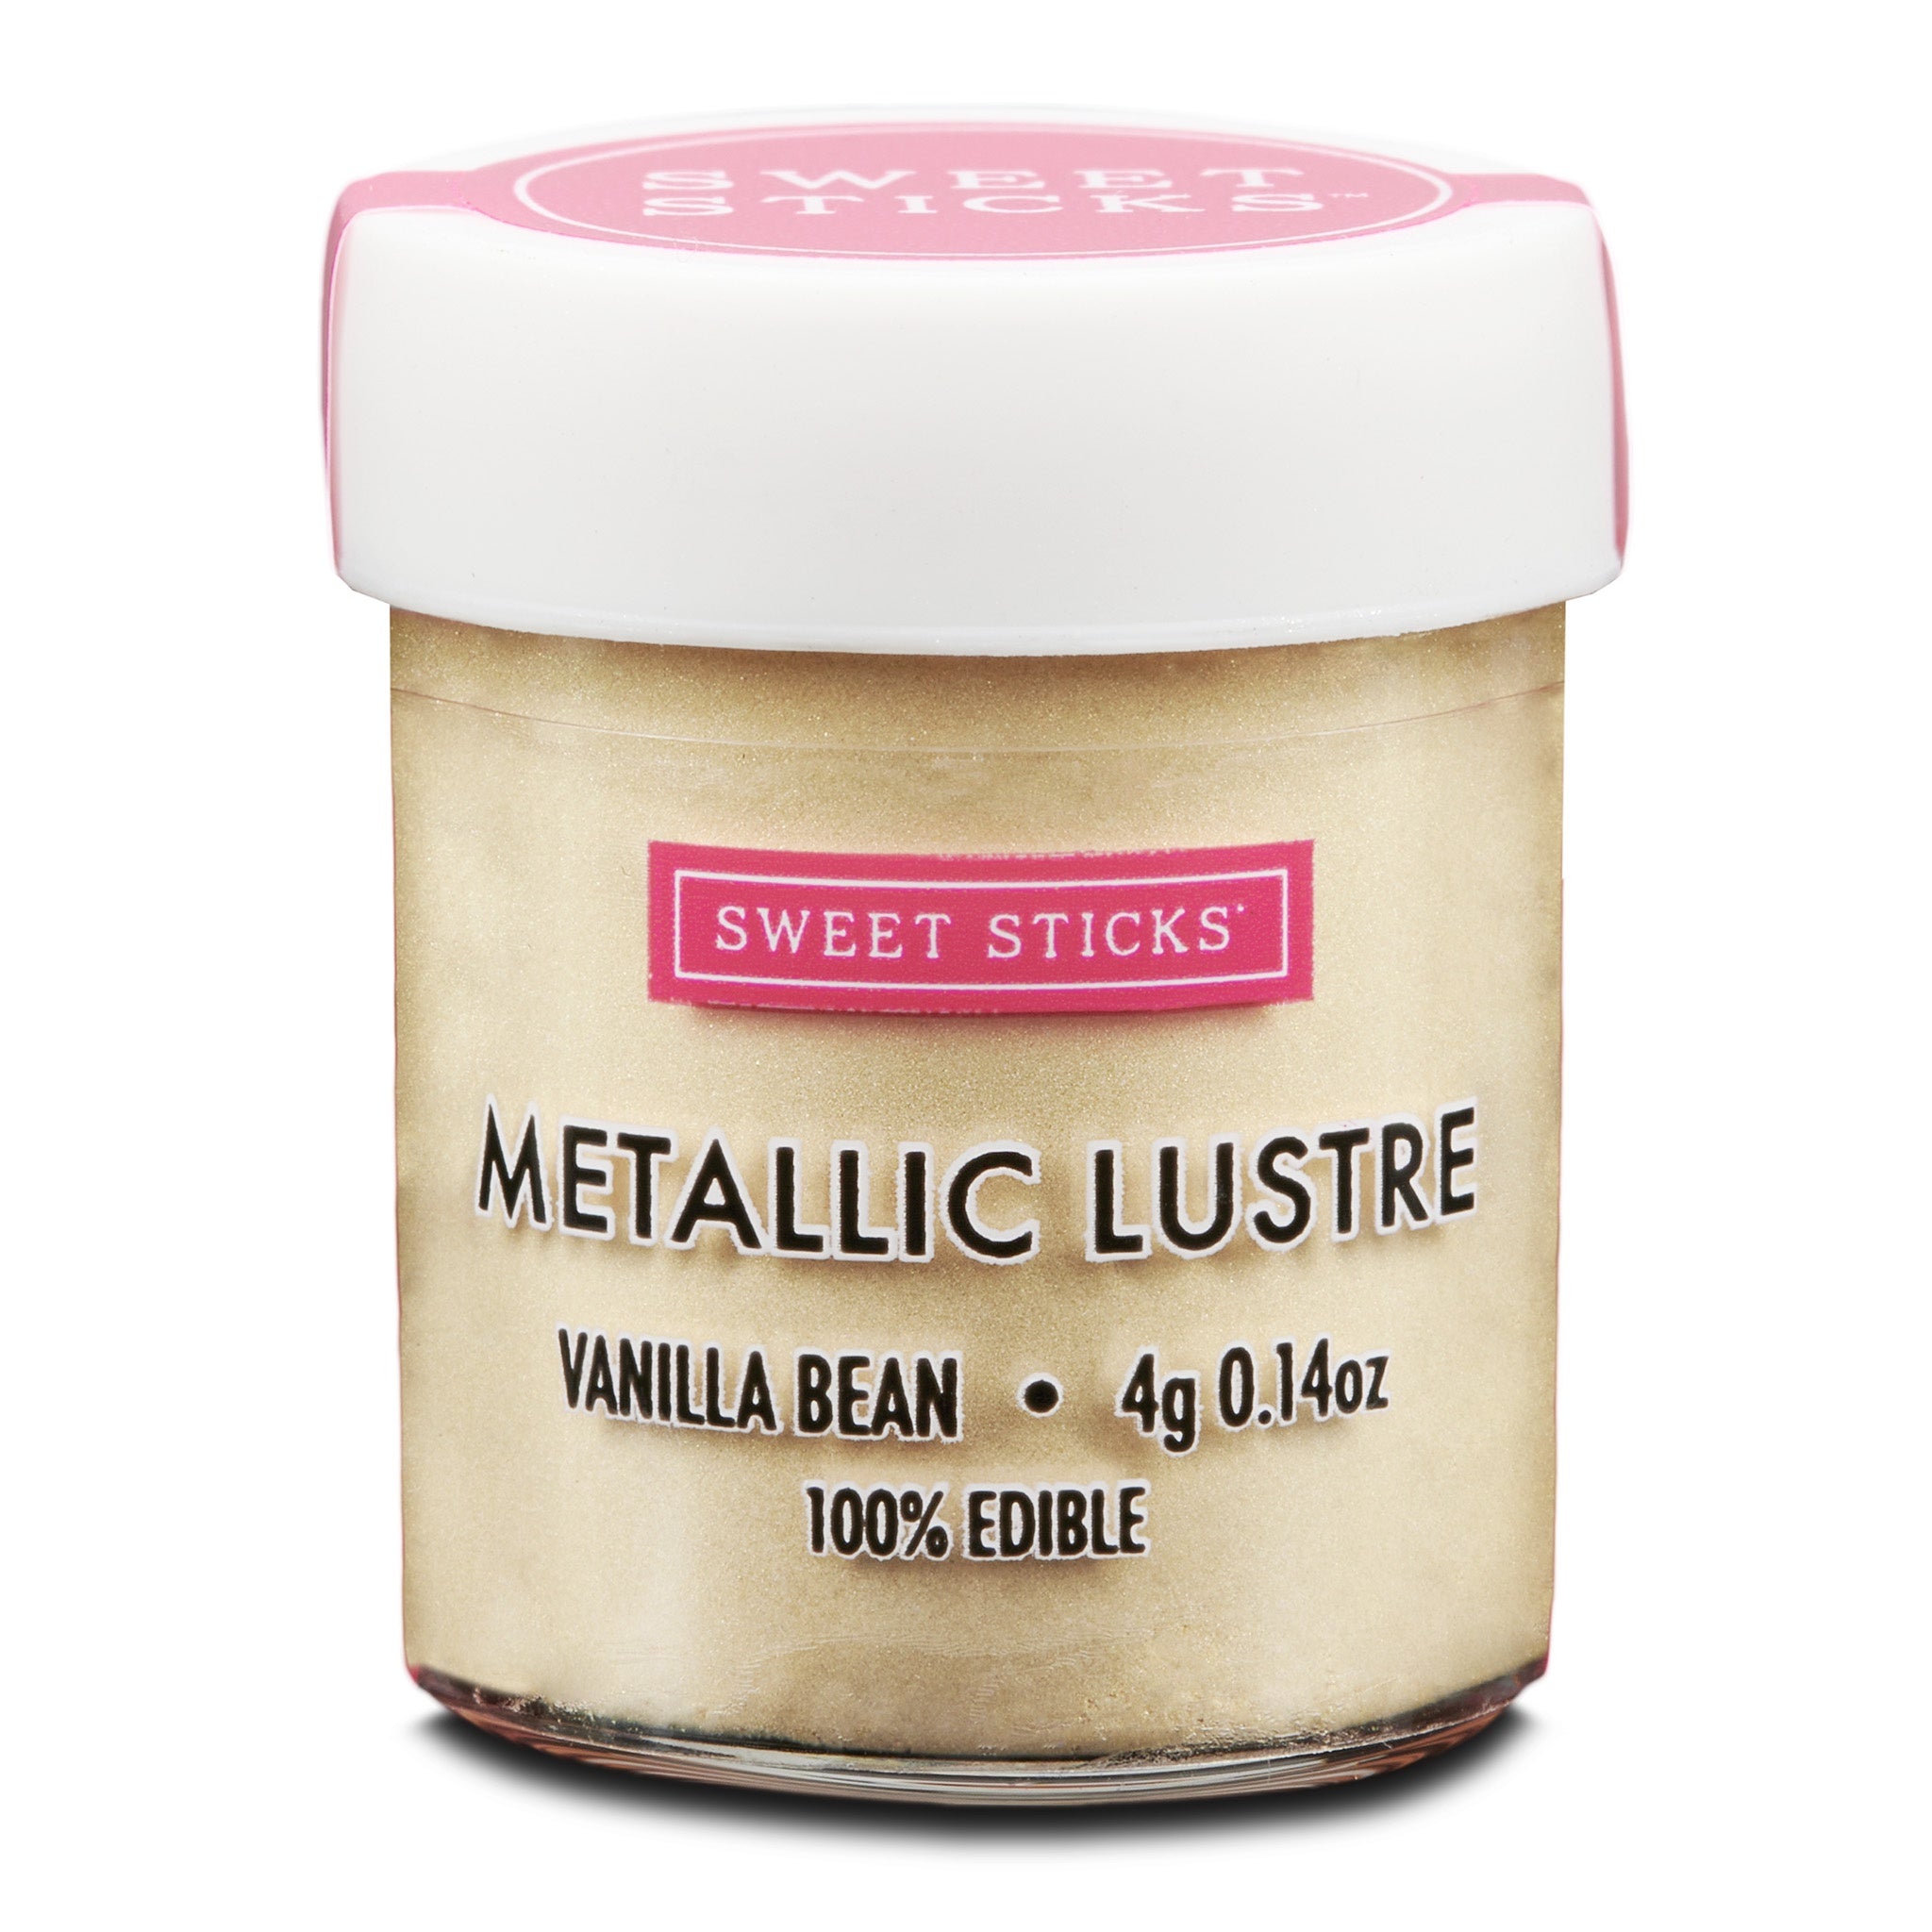 Sweet Sticks Metallic Lustre 4g - Vanilla Bean